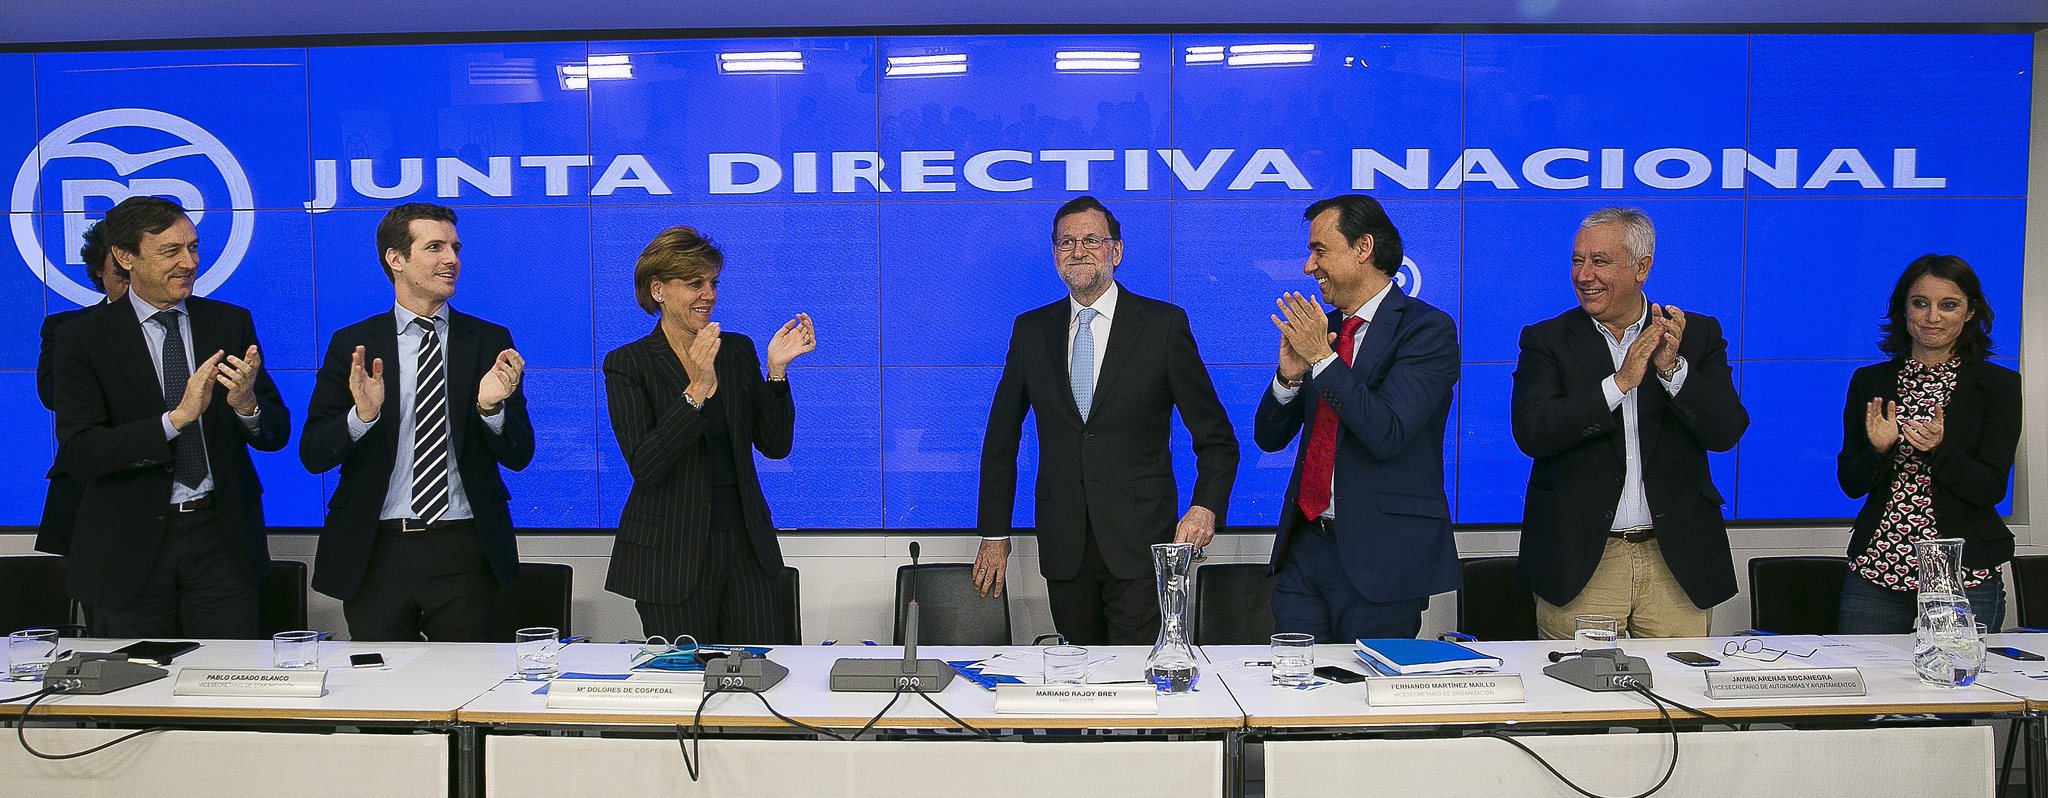 La Junta Directiva del Partido Popular aplaude a Mariano Rajoy.